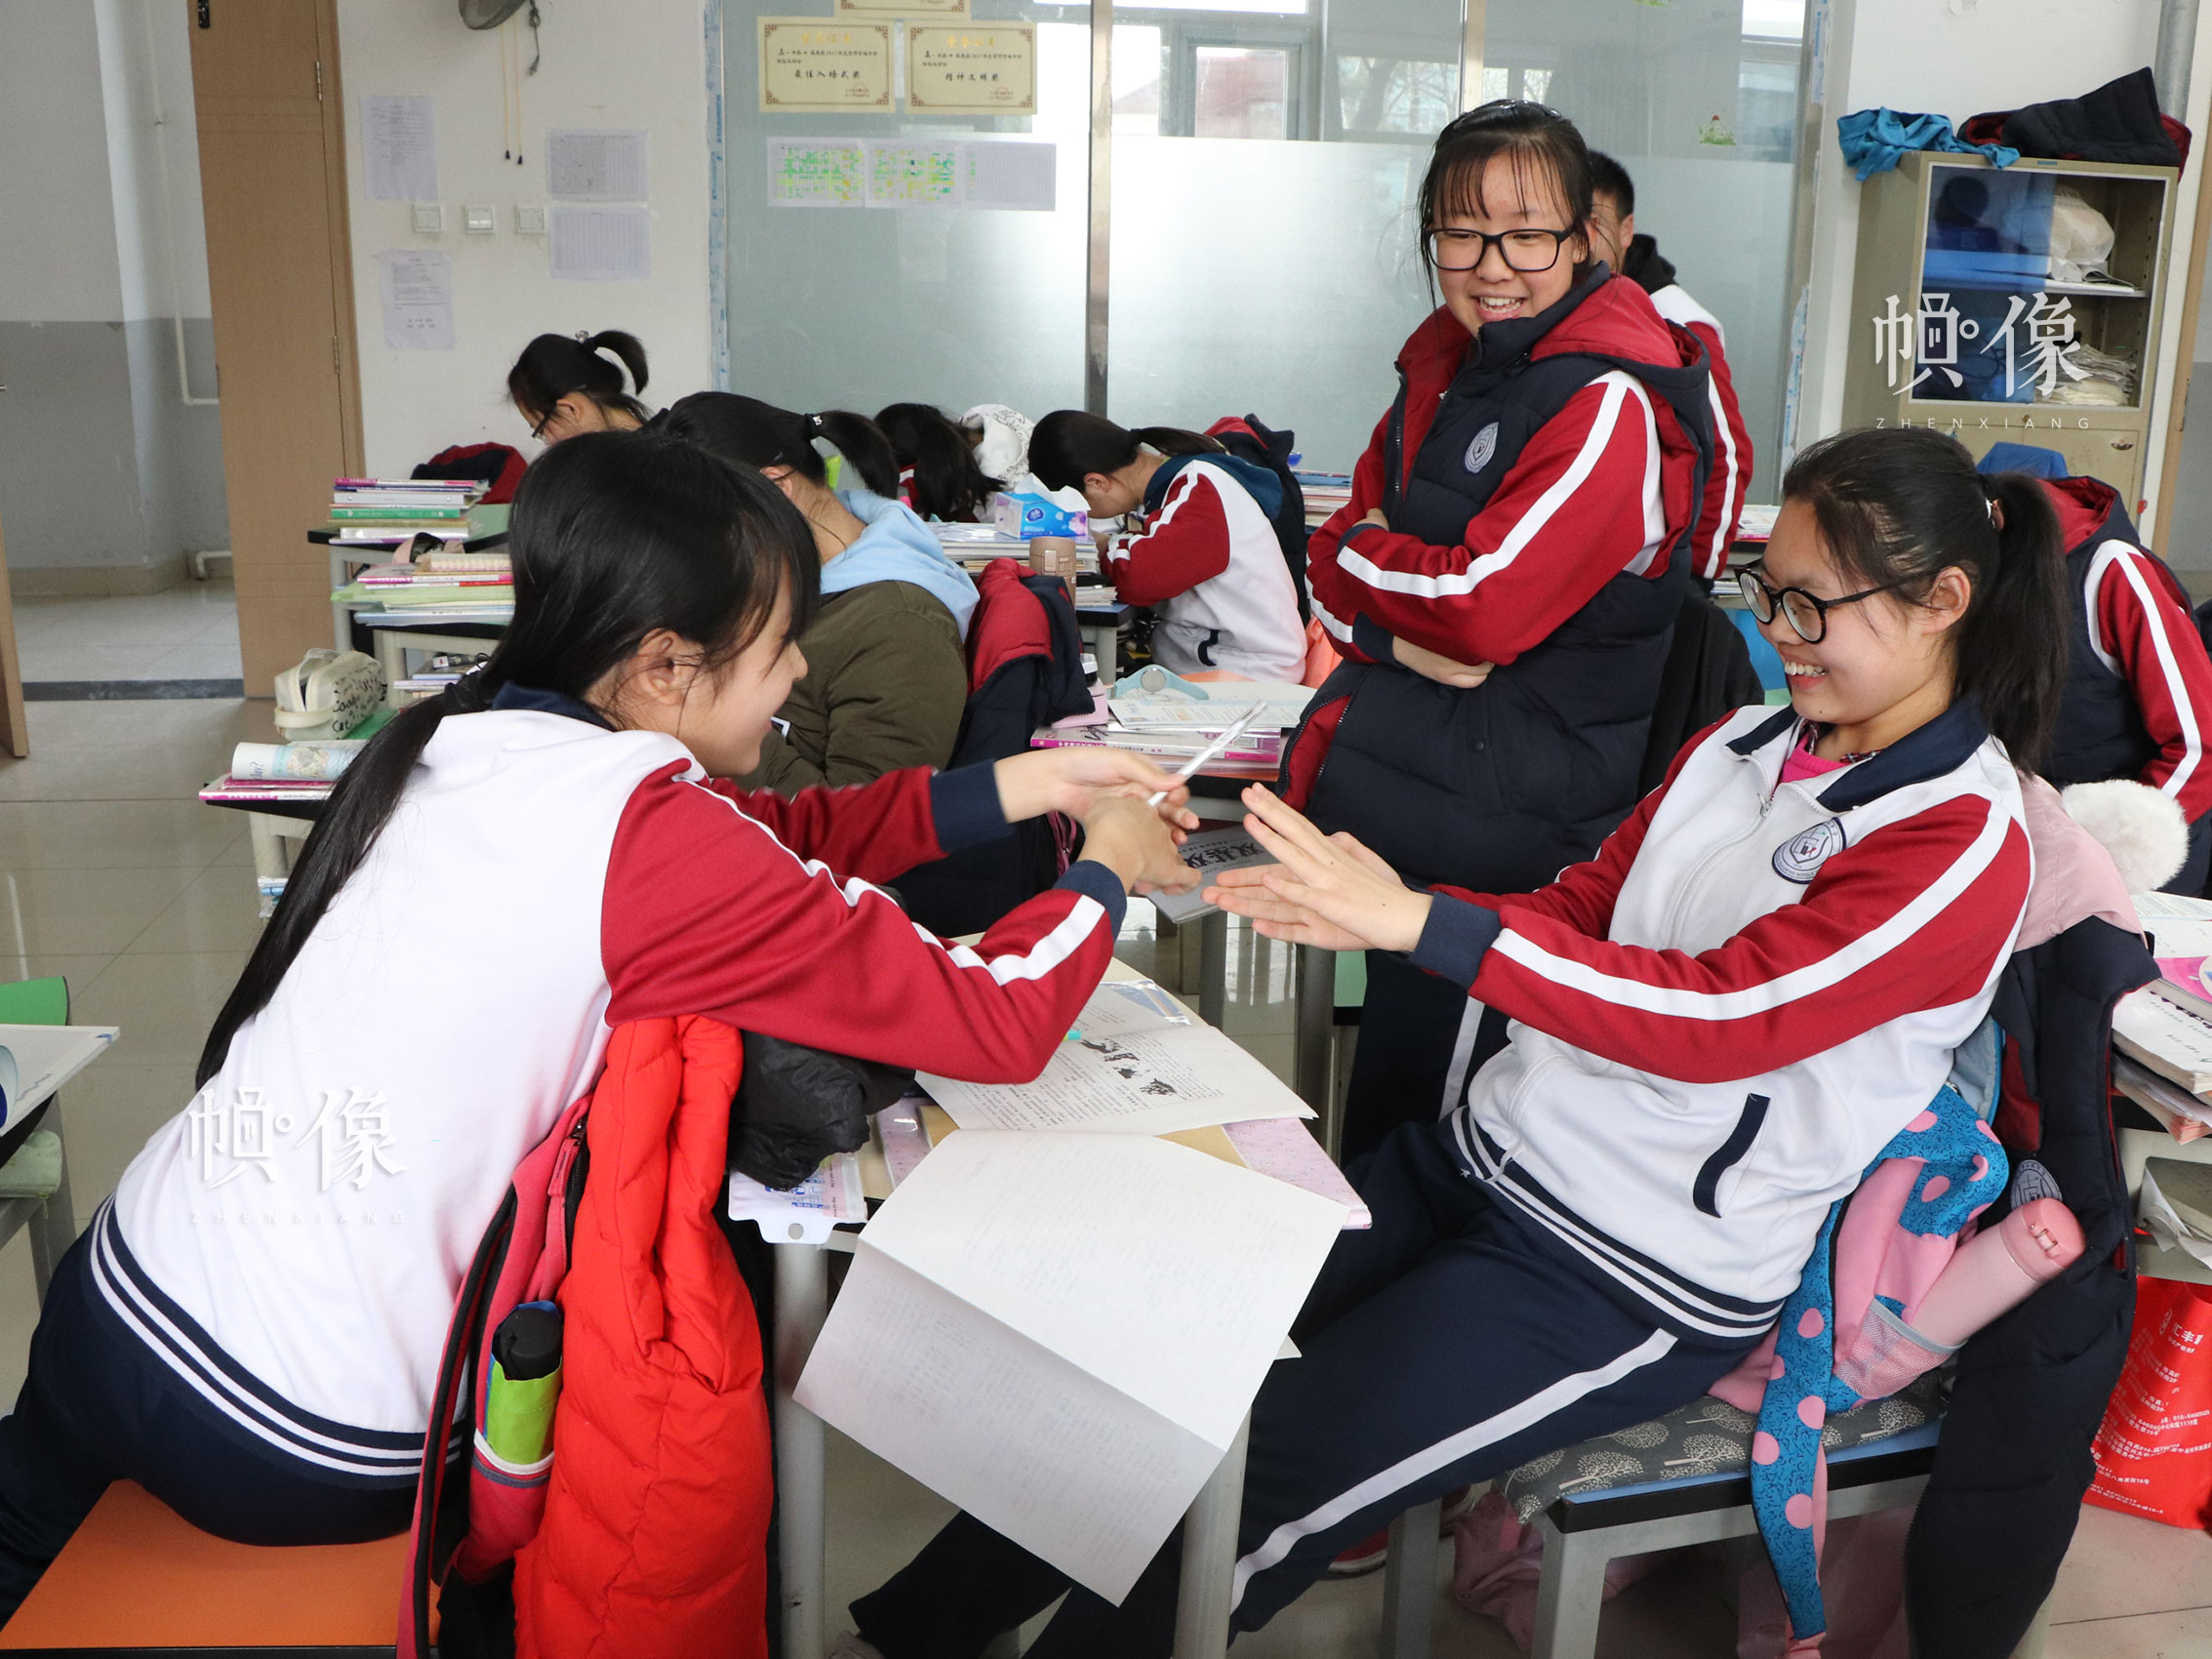 北京市石景山区某中学，课间嬉戏玩耍的学生们。中国网实习记者 韩依 摄